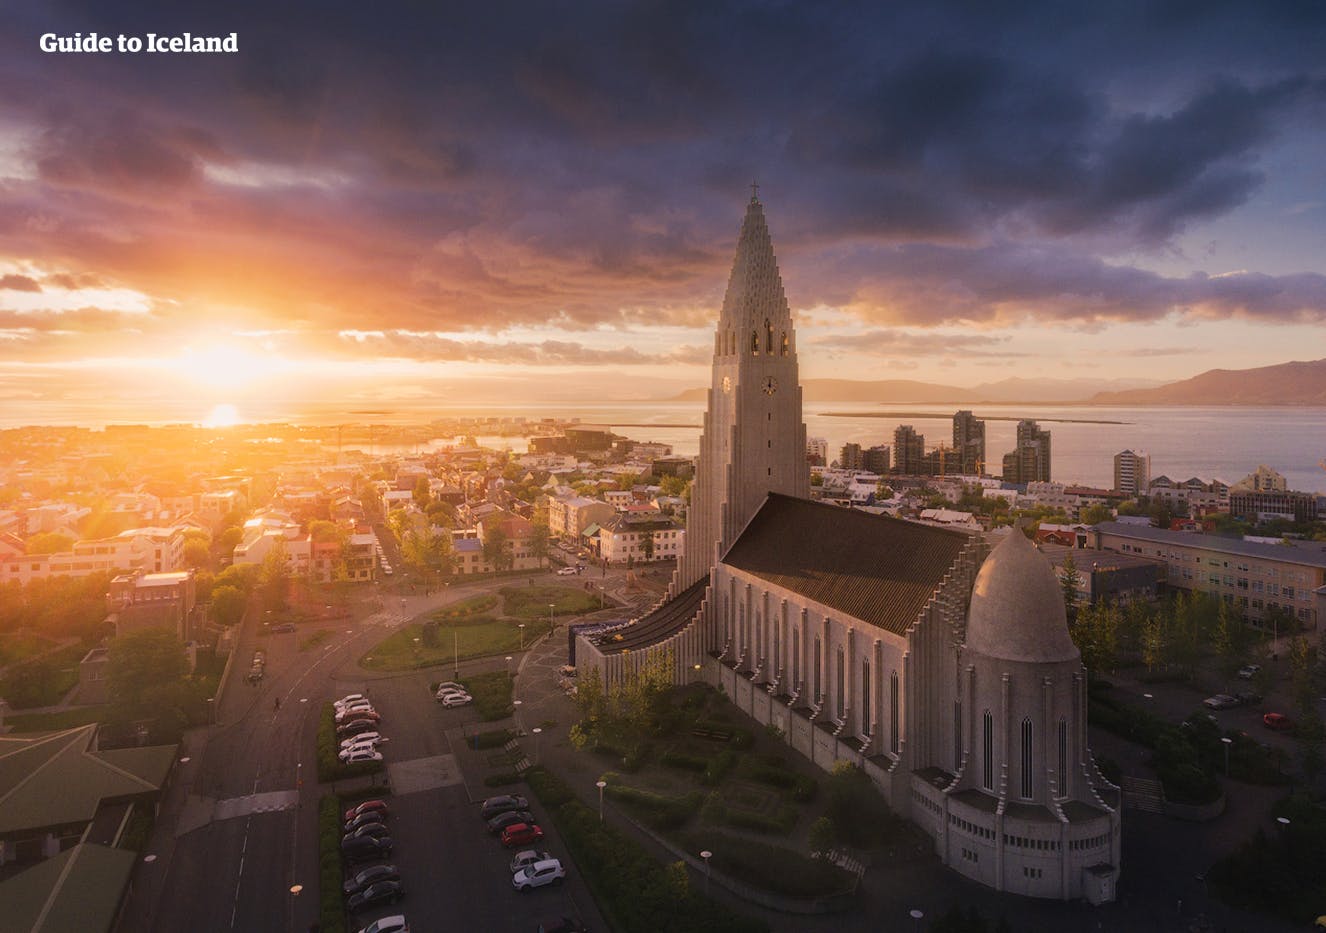 De Hallgrimskirkja is slechts een van de vele culturele bezienswaardigheden in Reykjavik.